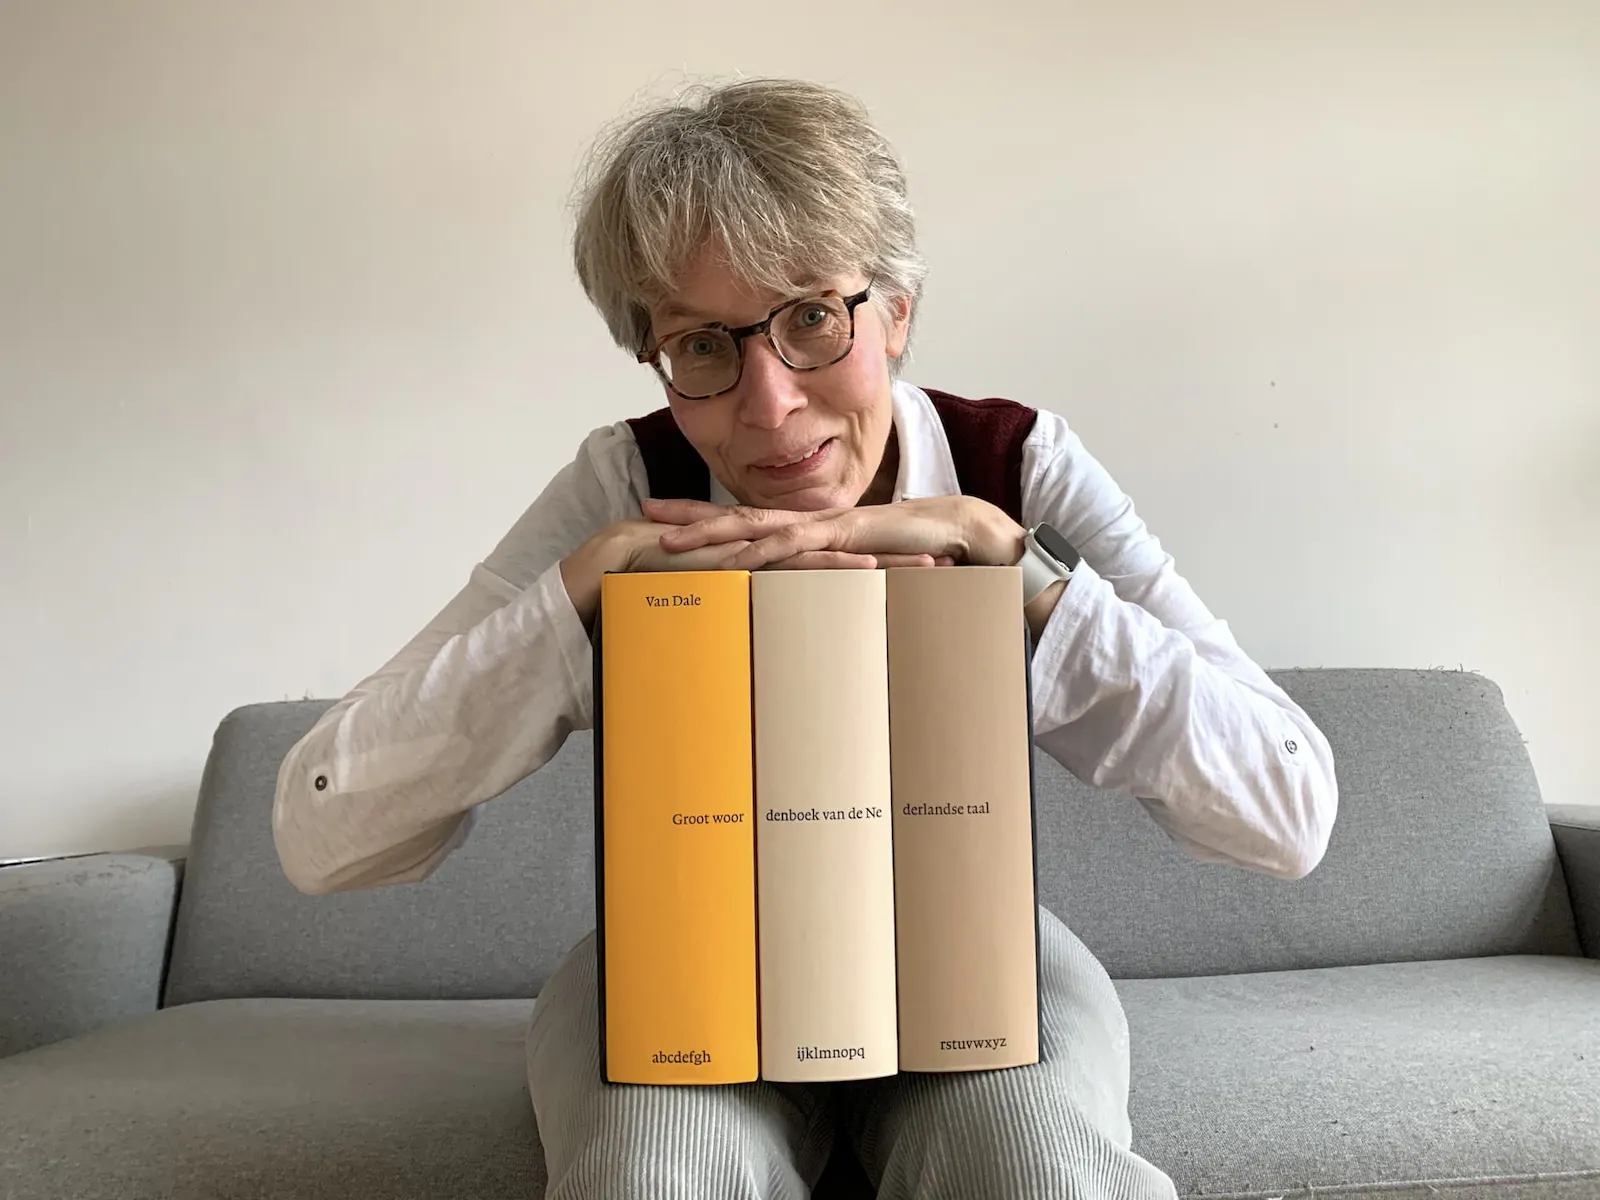 Alexandra mit dem Groot Woordenboek van d eNederlandse Taal in drei Bänden